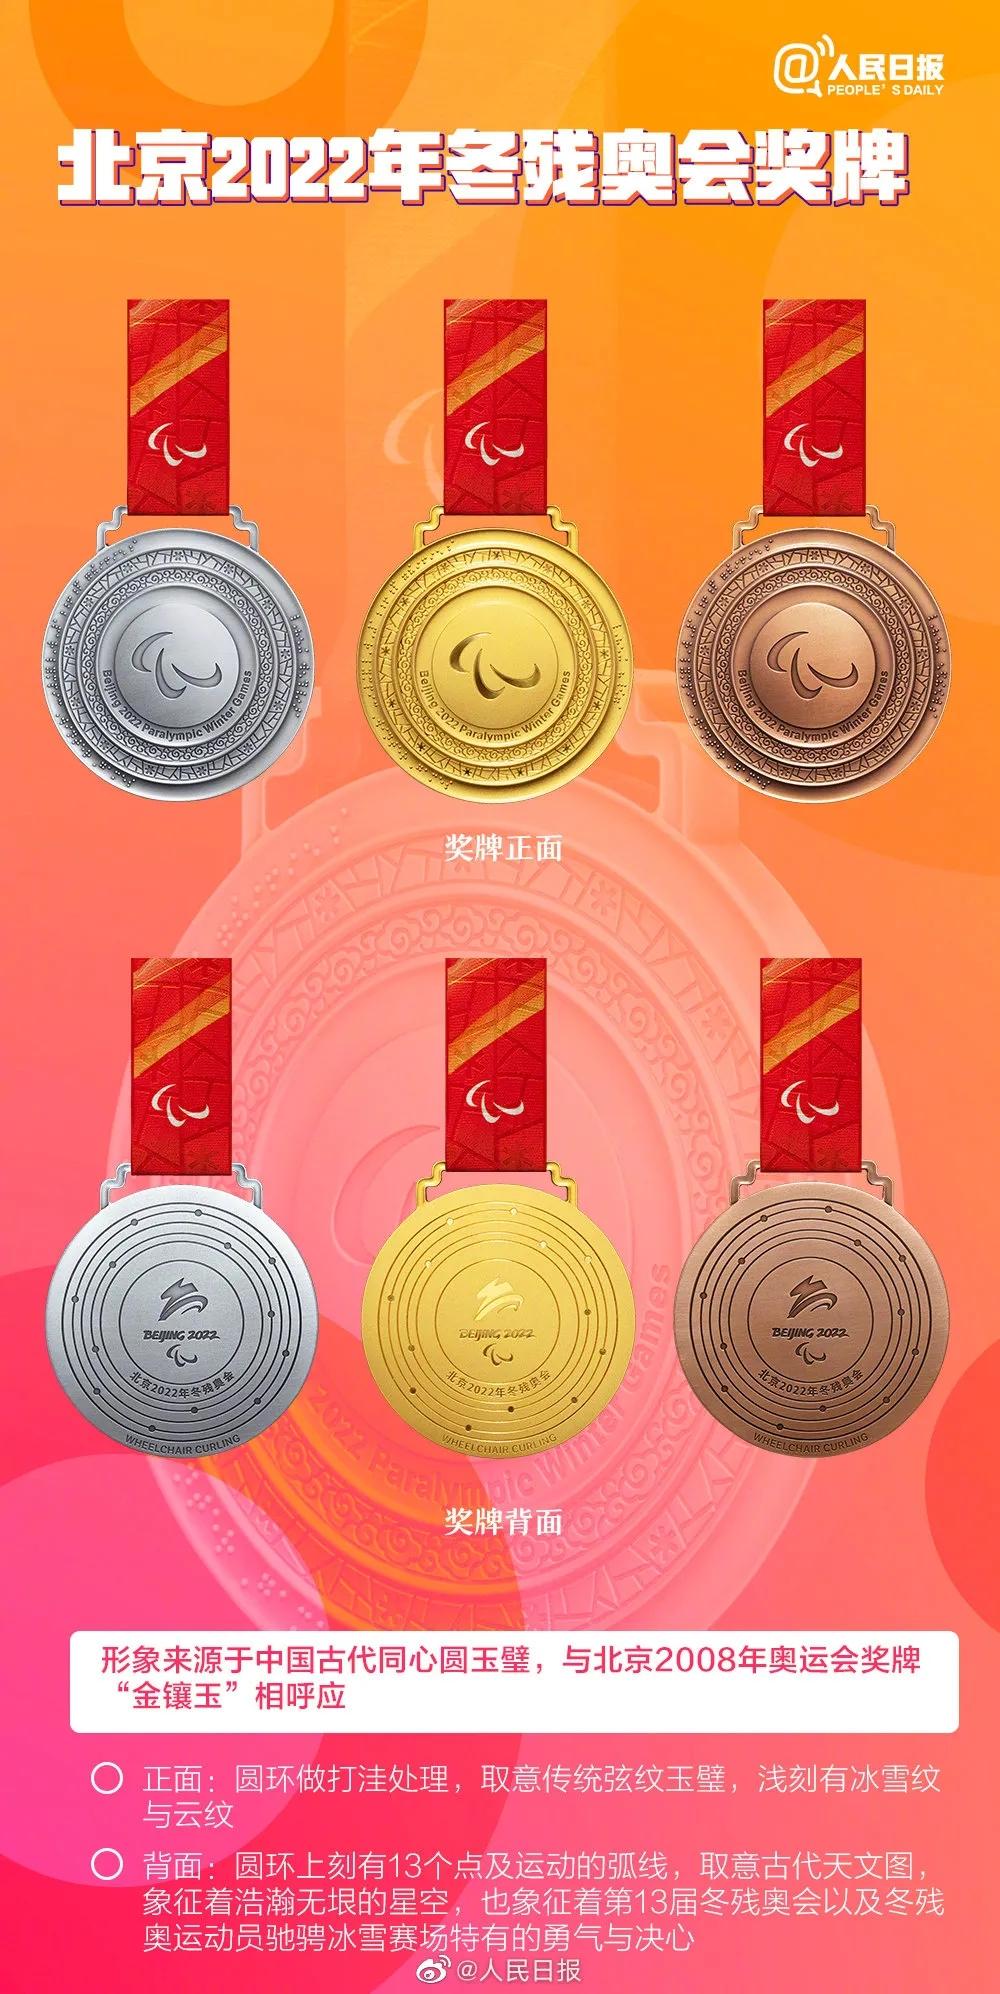 天地合人心同北京冬奥会奖牌满满都是中国式浪漫